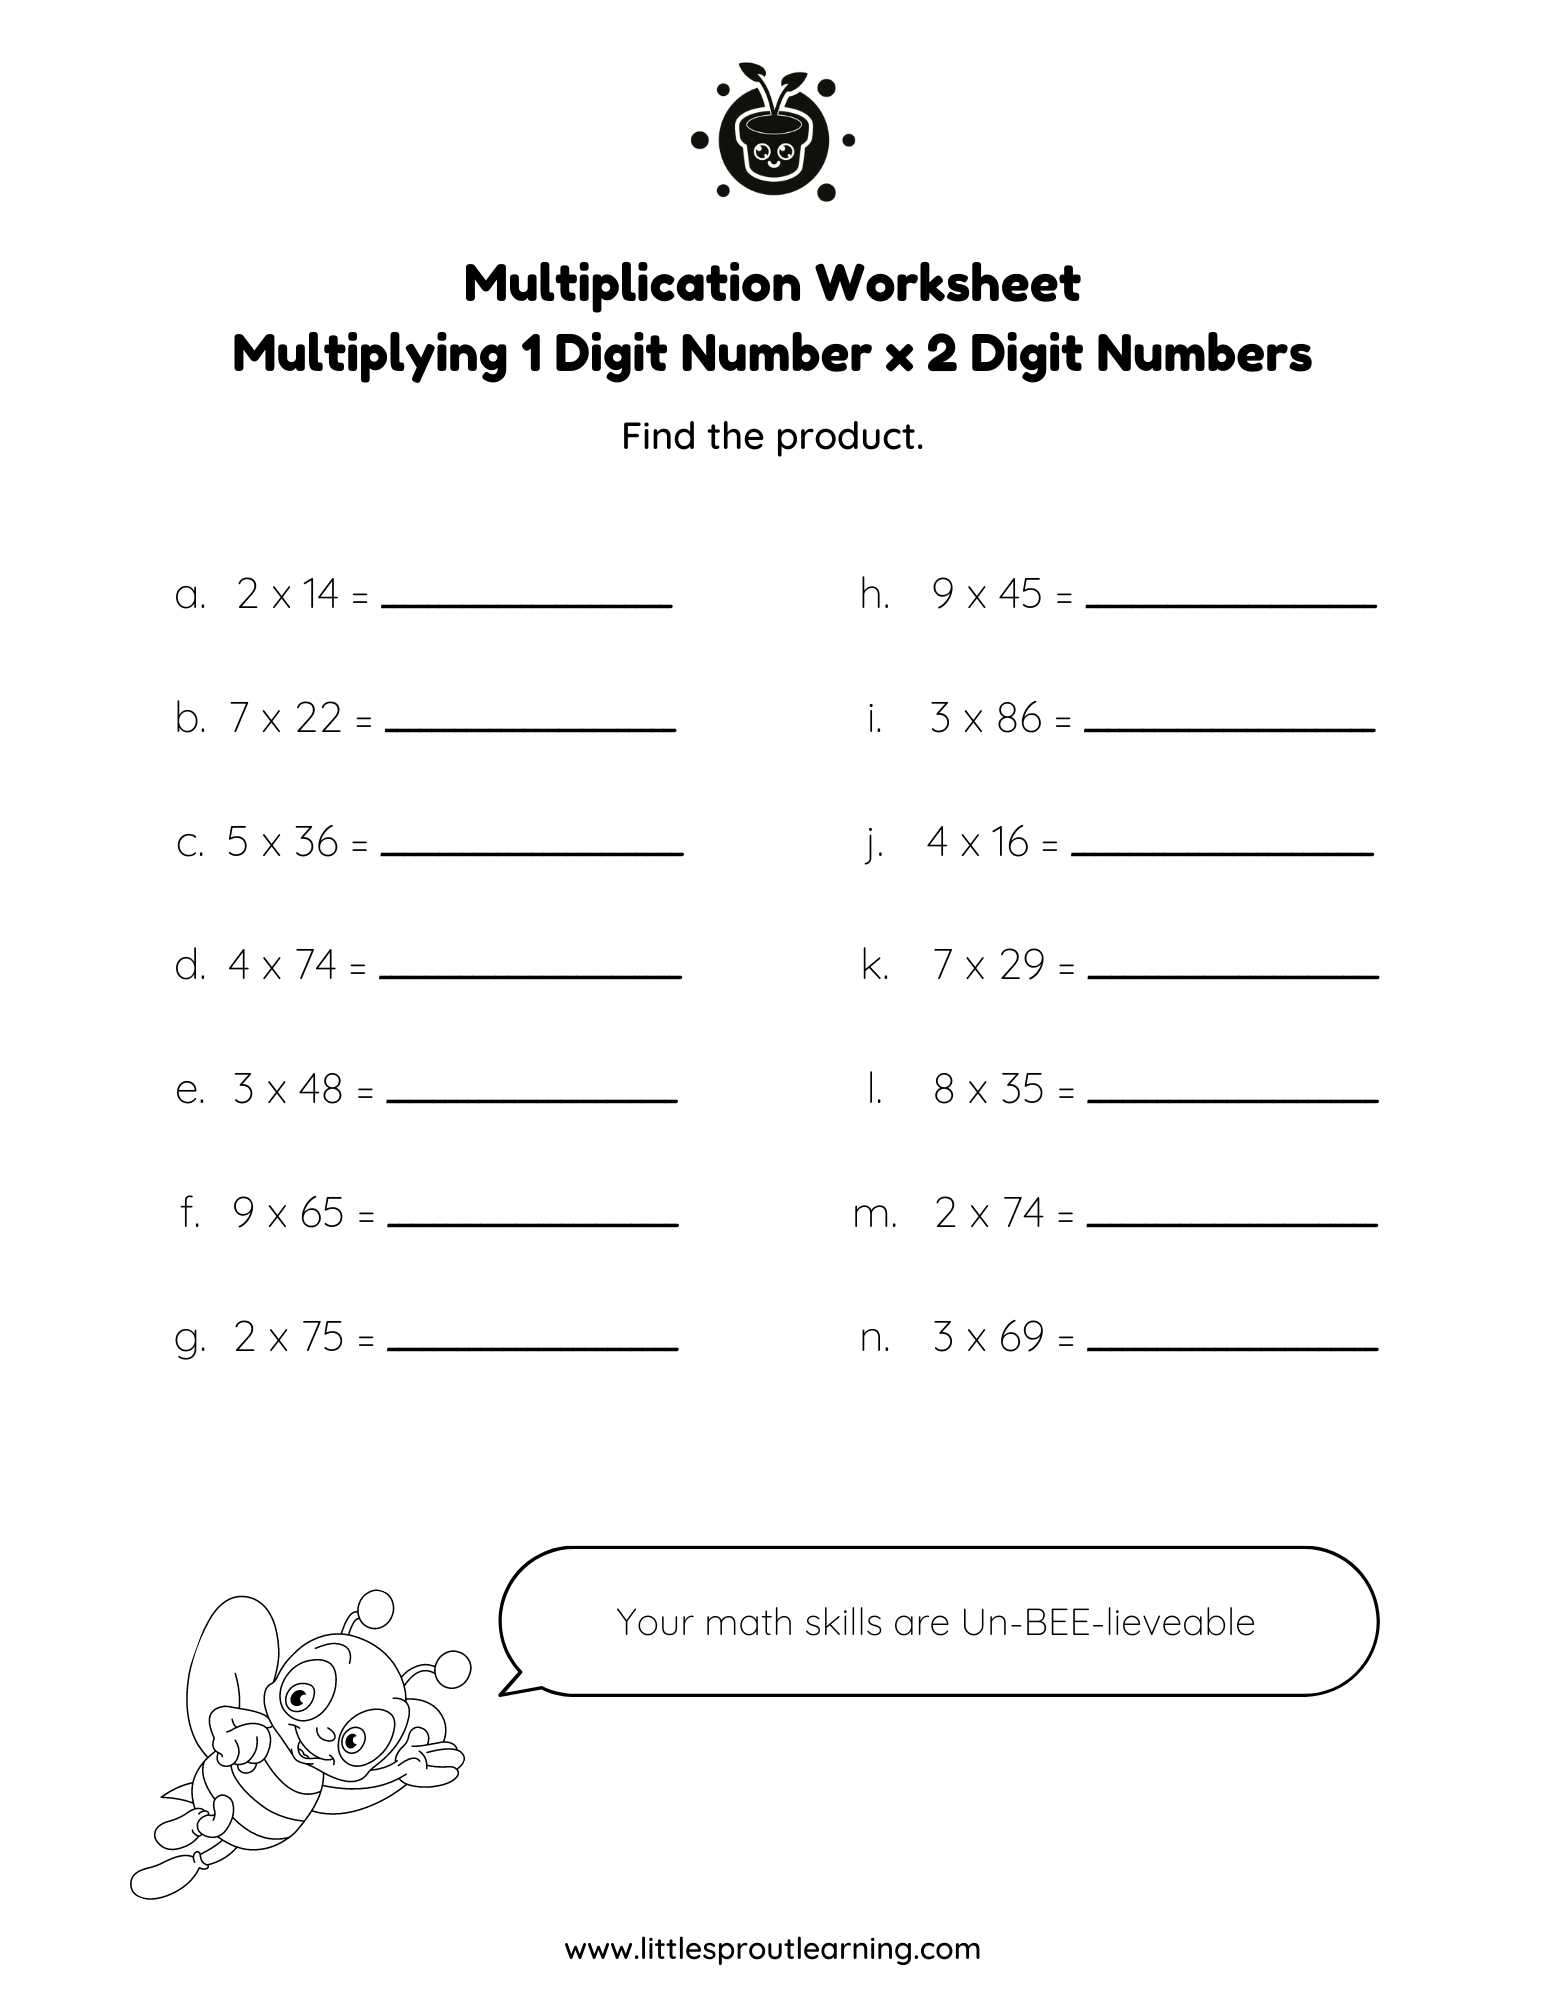 Multiplication Worksheet – Multiplying Single and 2 Digit Numbers